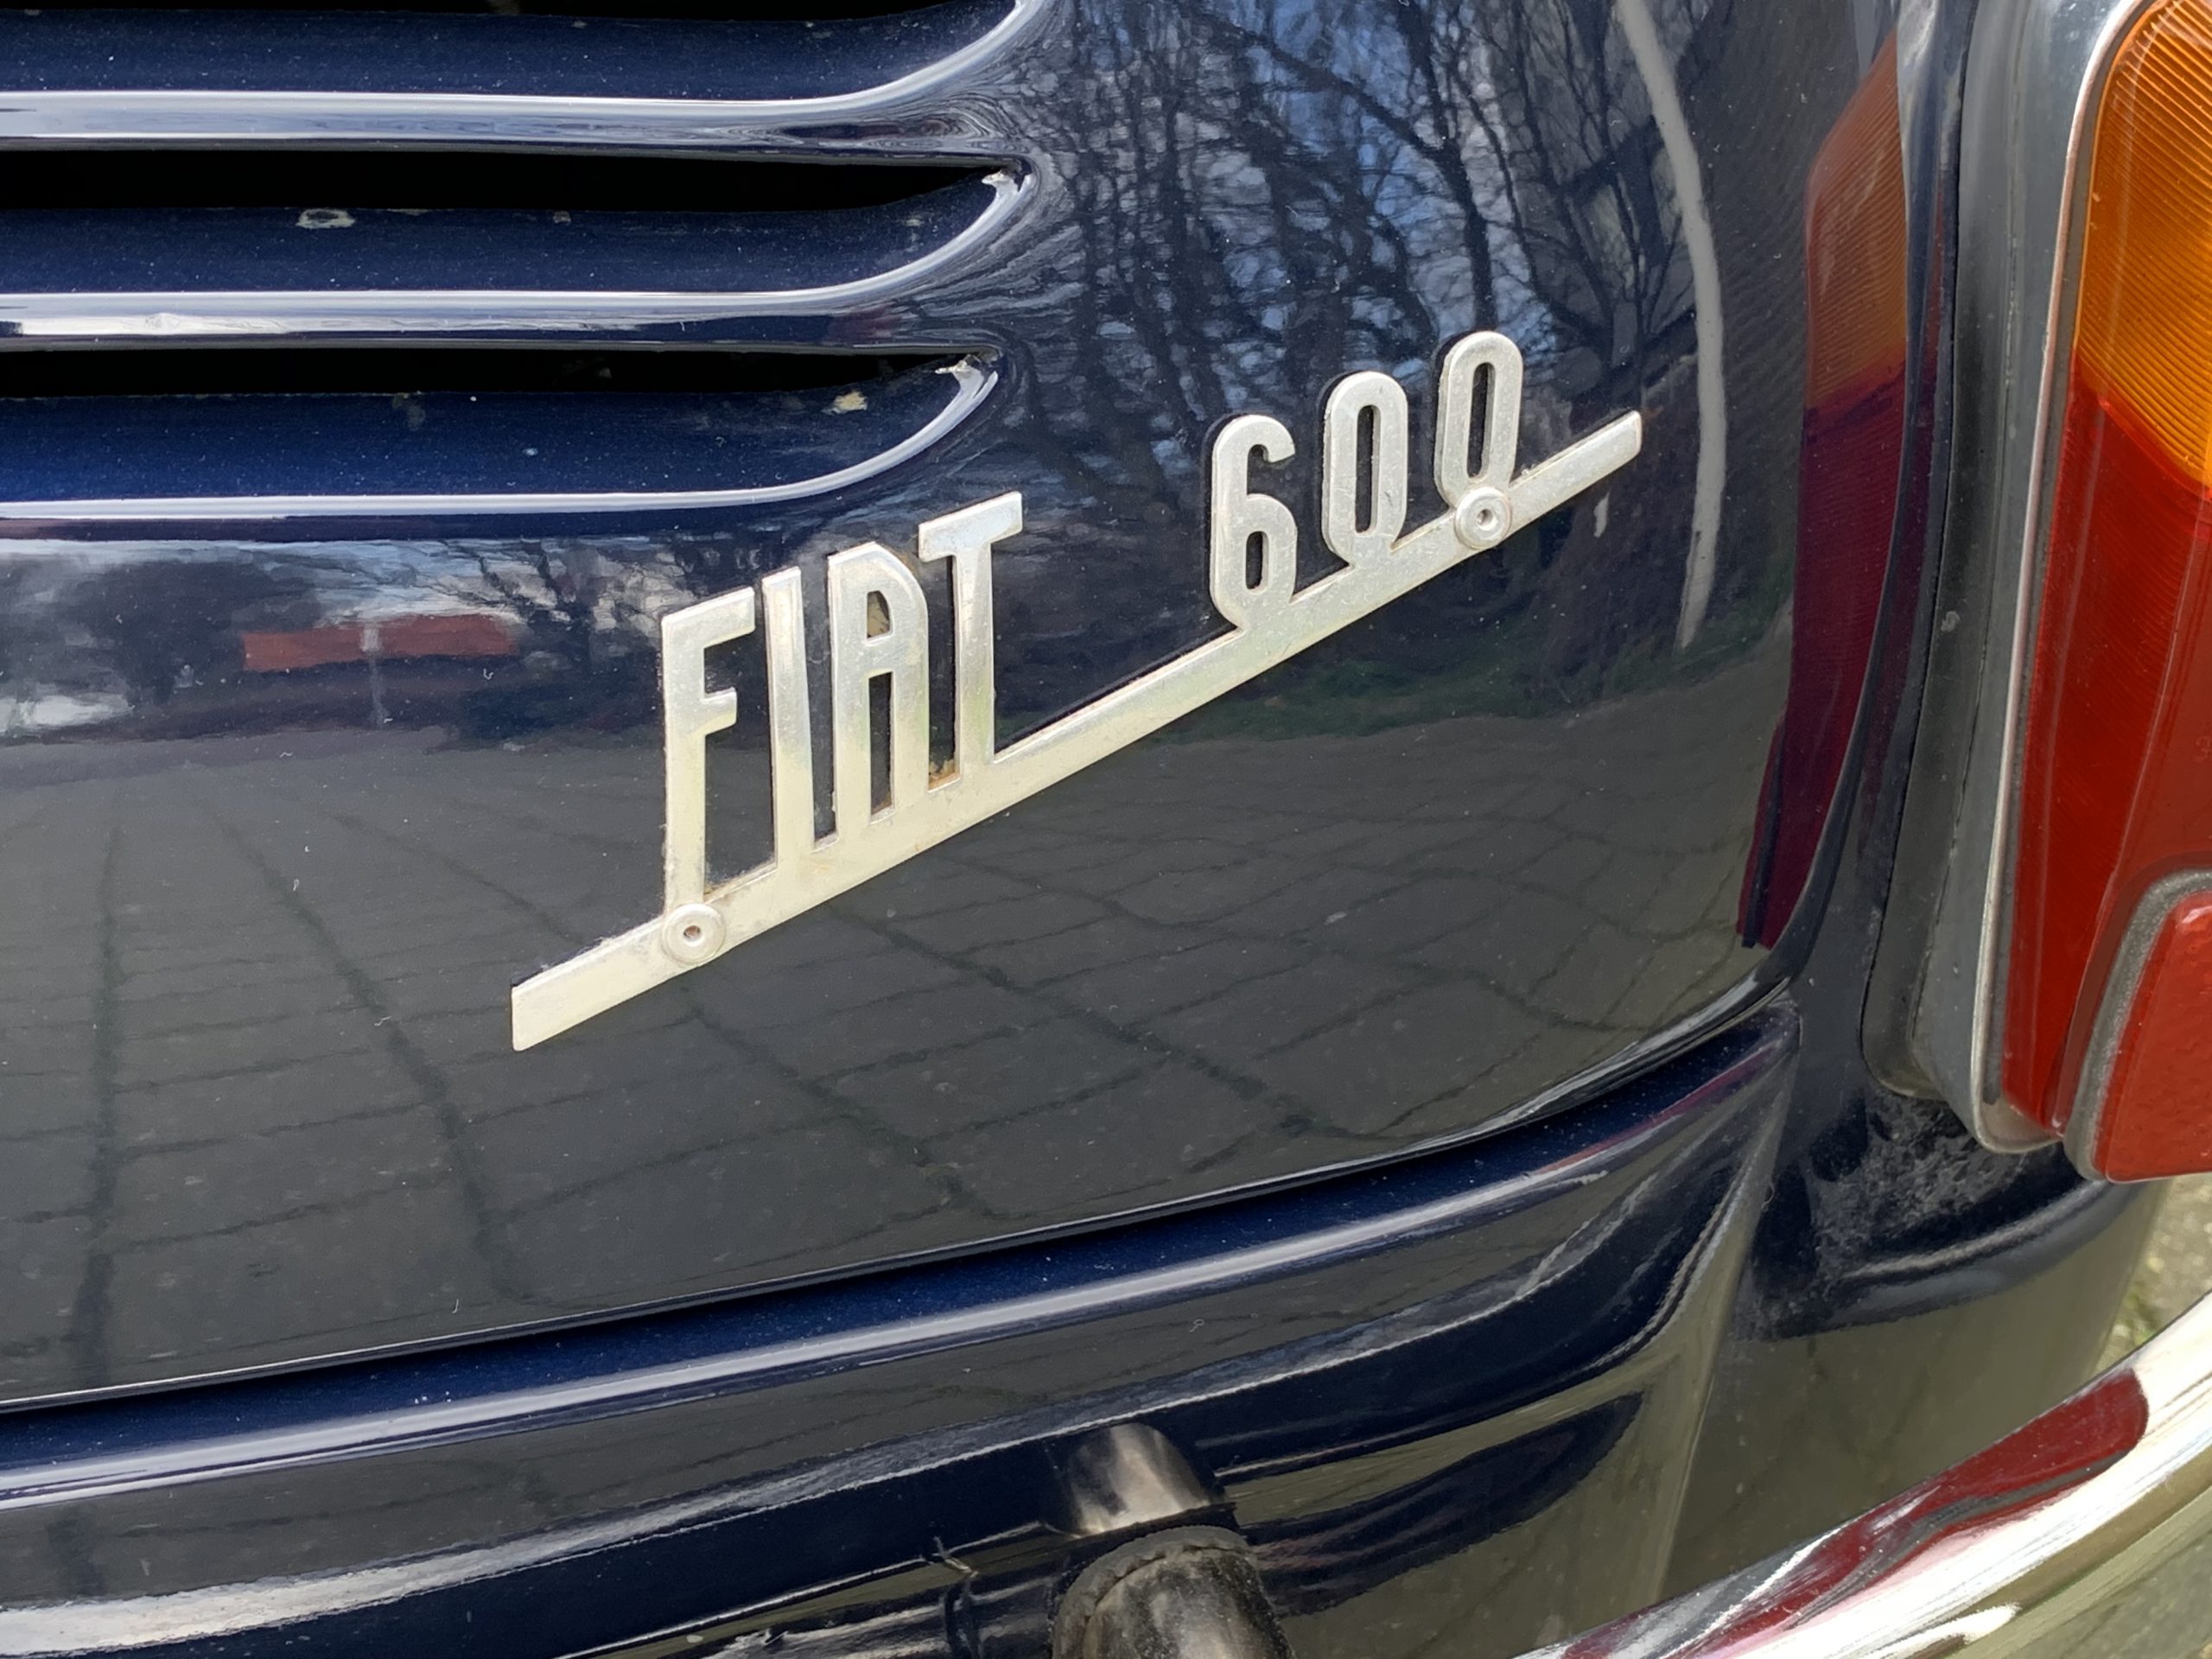 Fiat 600 Multipla